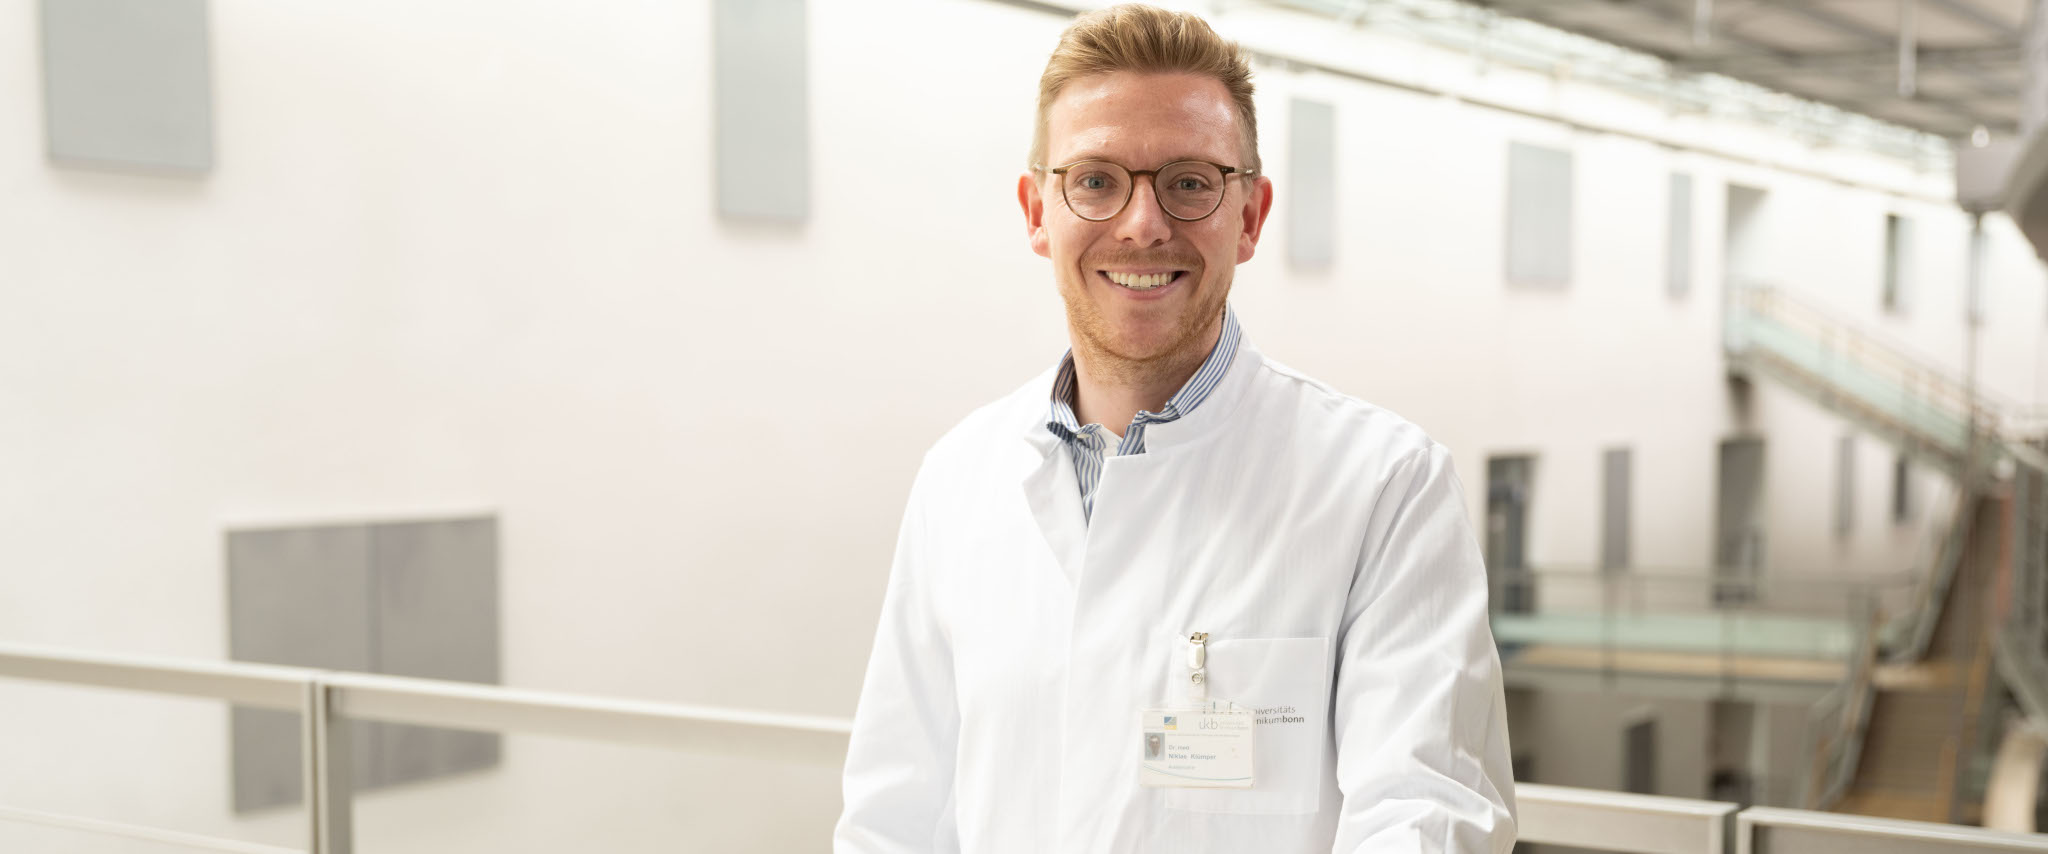 Dr. Niklas Klümper, Urologe am UKB, erhält Forschungs- und Innovationspreis für urologische Onkologie für wissenschaftliche Erkenntnisse zu neuem Krebsmedikament